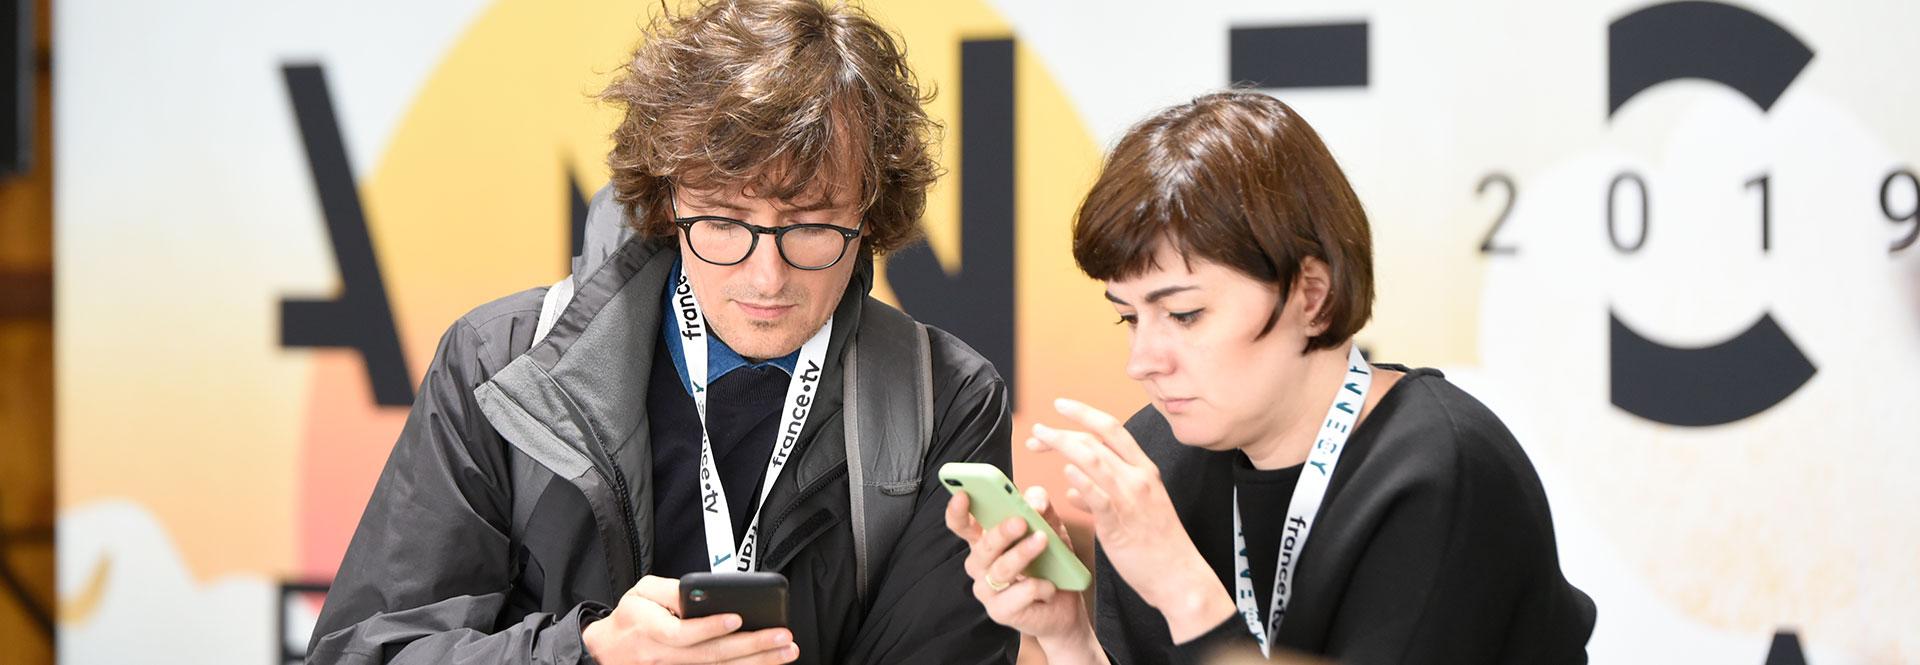 Deux personnes utilisant l'appli mobile du festival. 